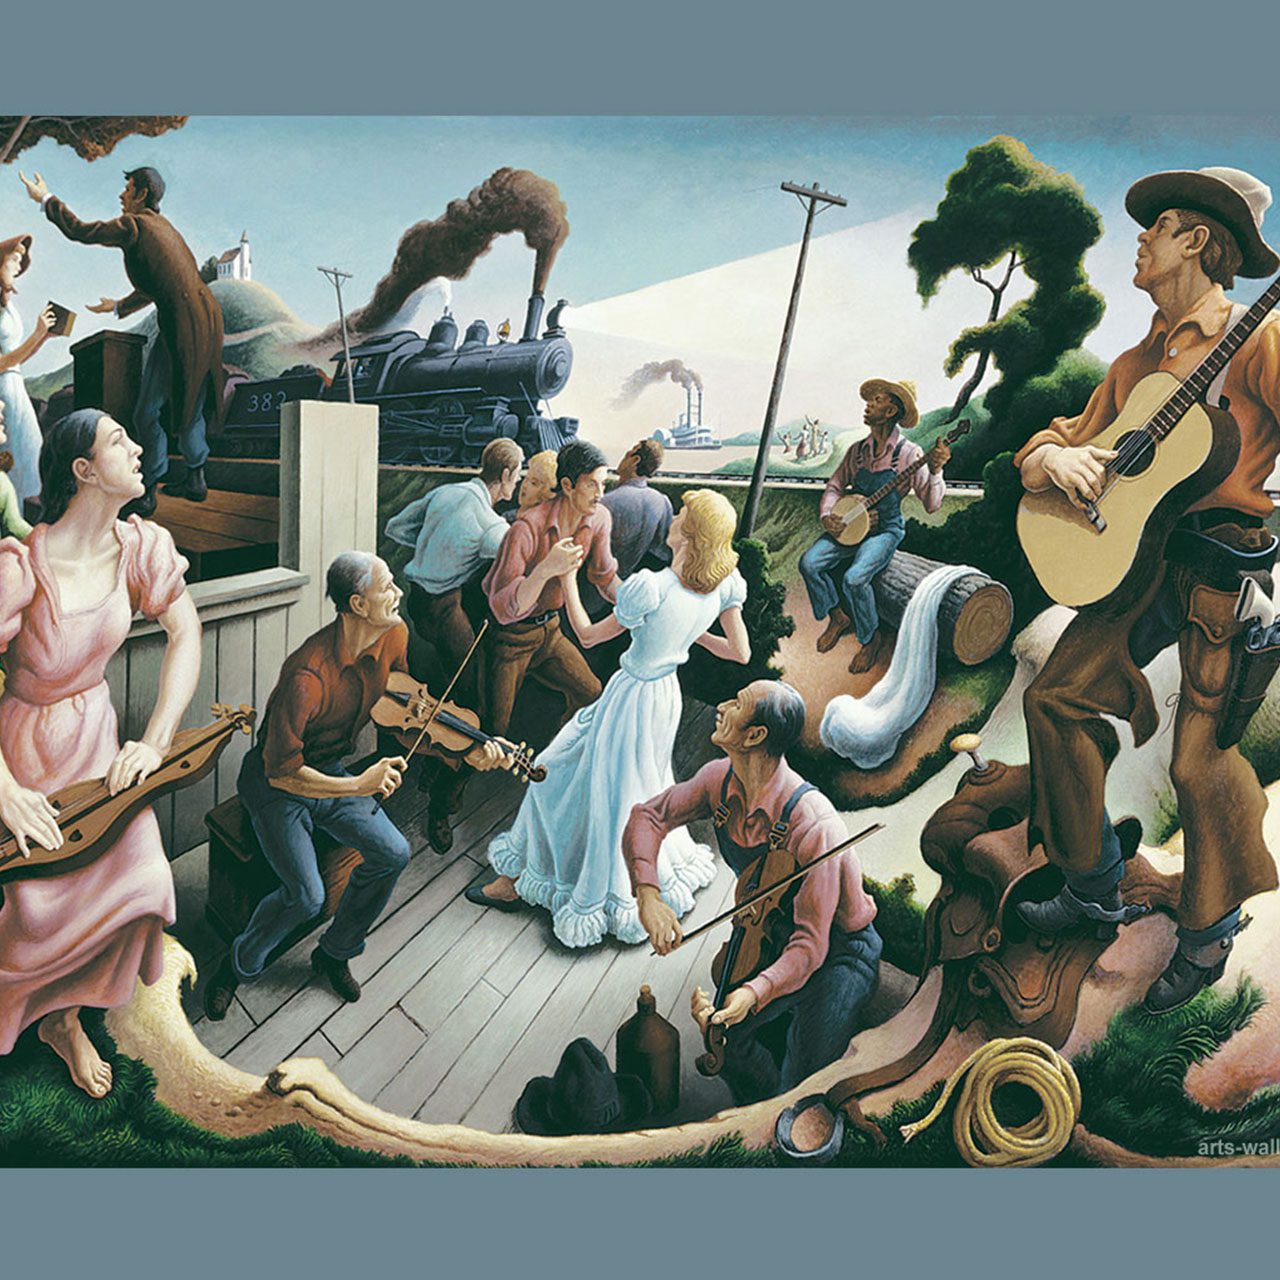 La bluegrass music: paradigma dell’identità americana (Parte 1)